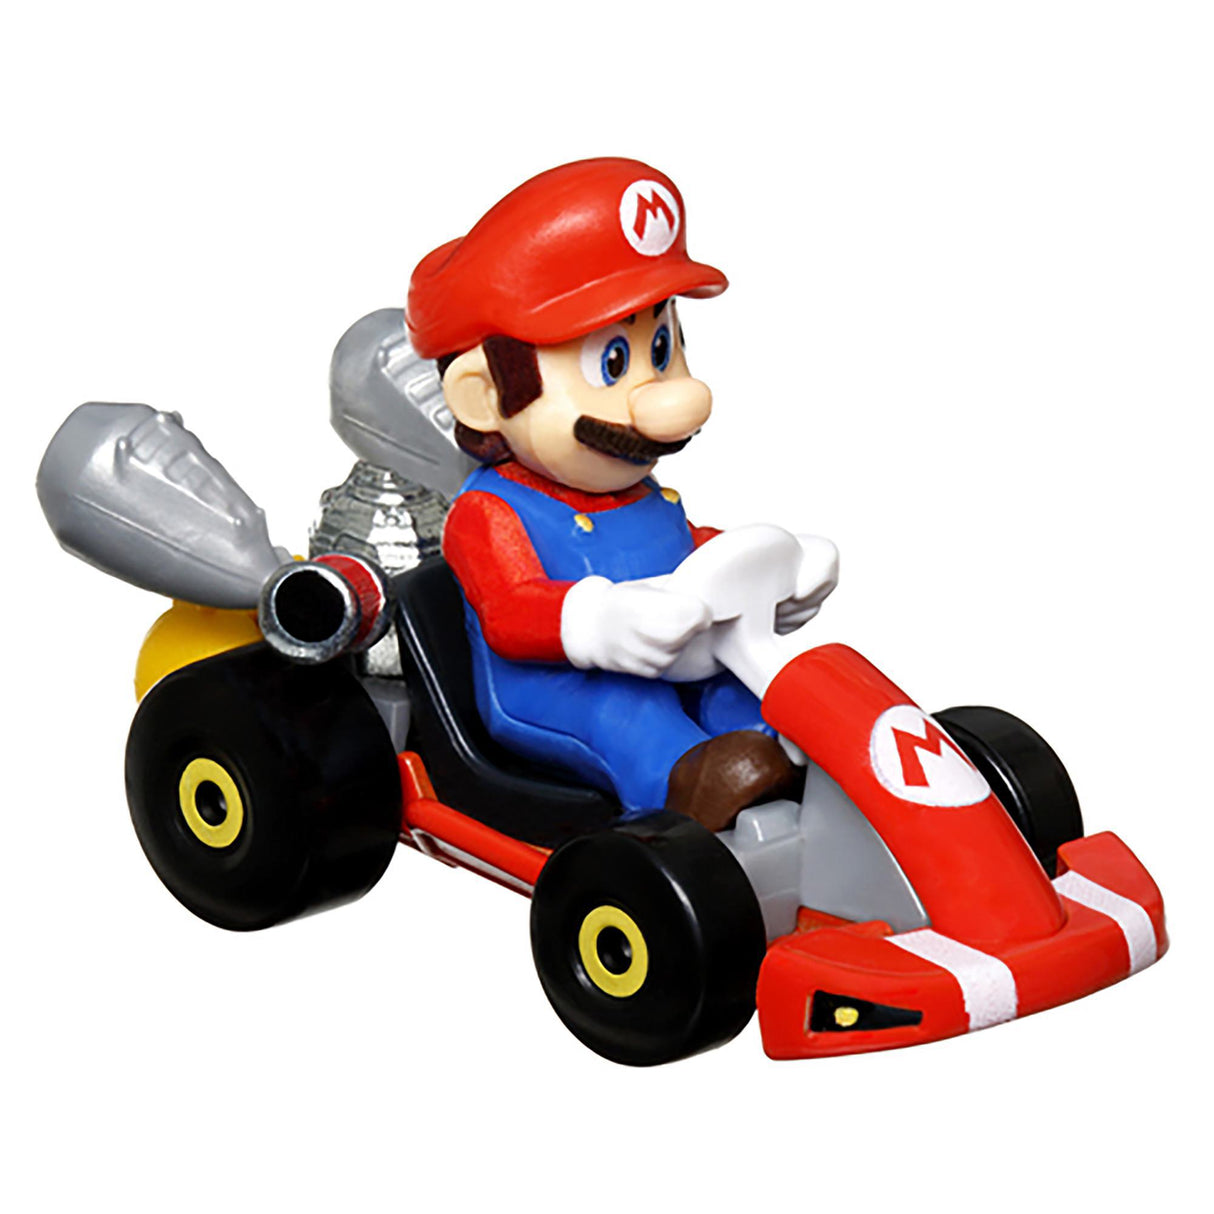 Hot Wheels Mario Kart The Super Mario Bros Movie Mario